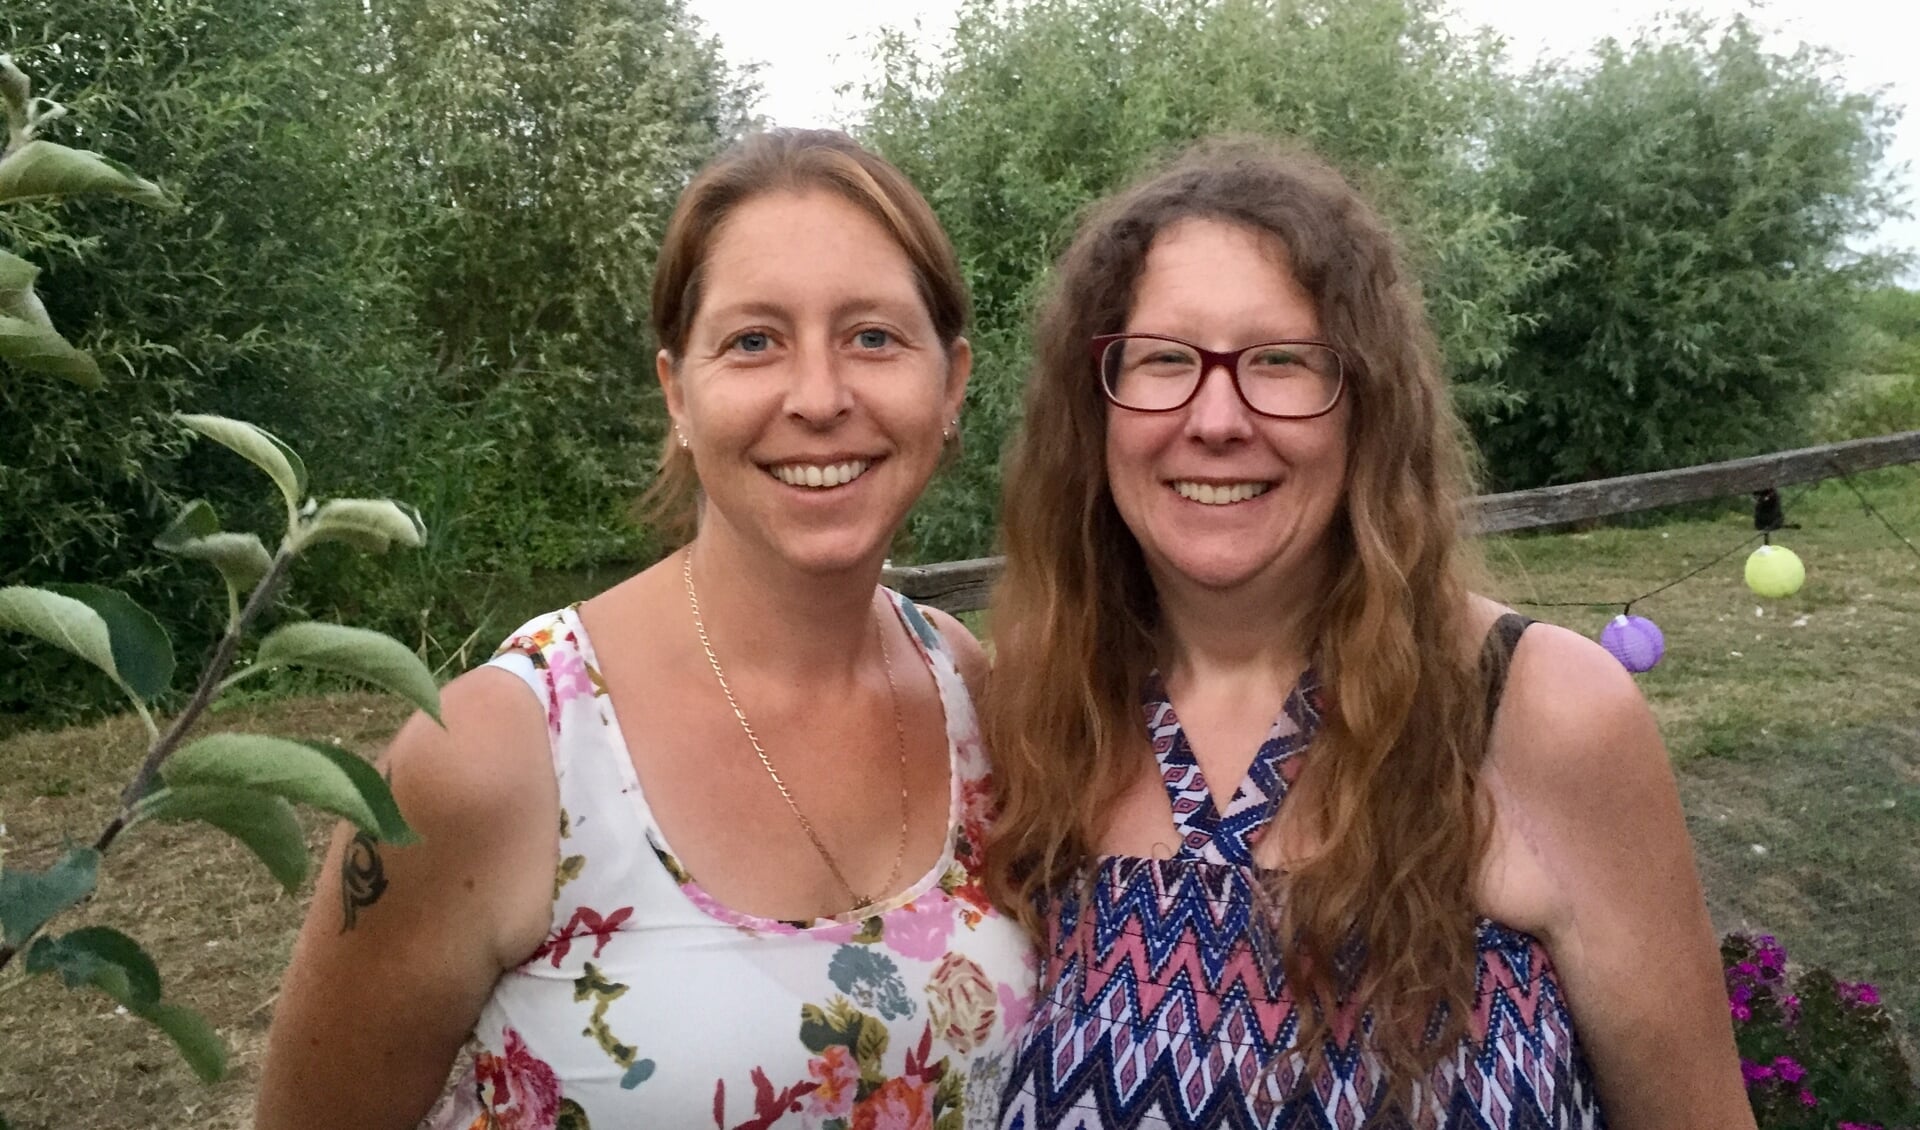 Wilma Huisman uit Dinteloord (links) en haar zus Nathalie de Jong uit Roosendaal.